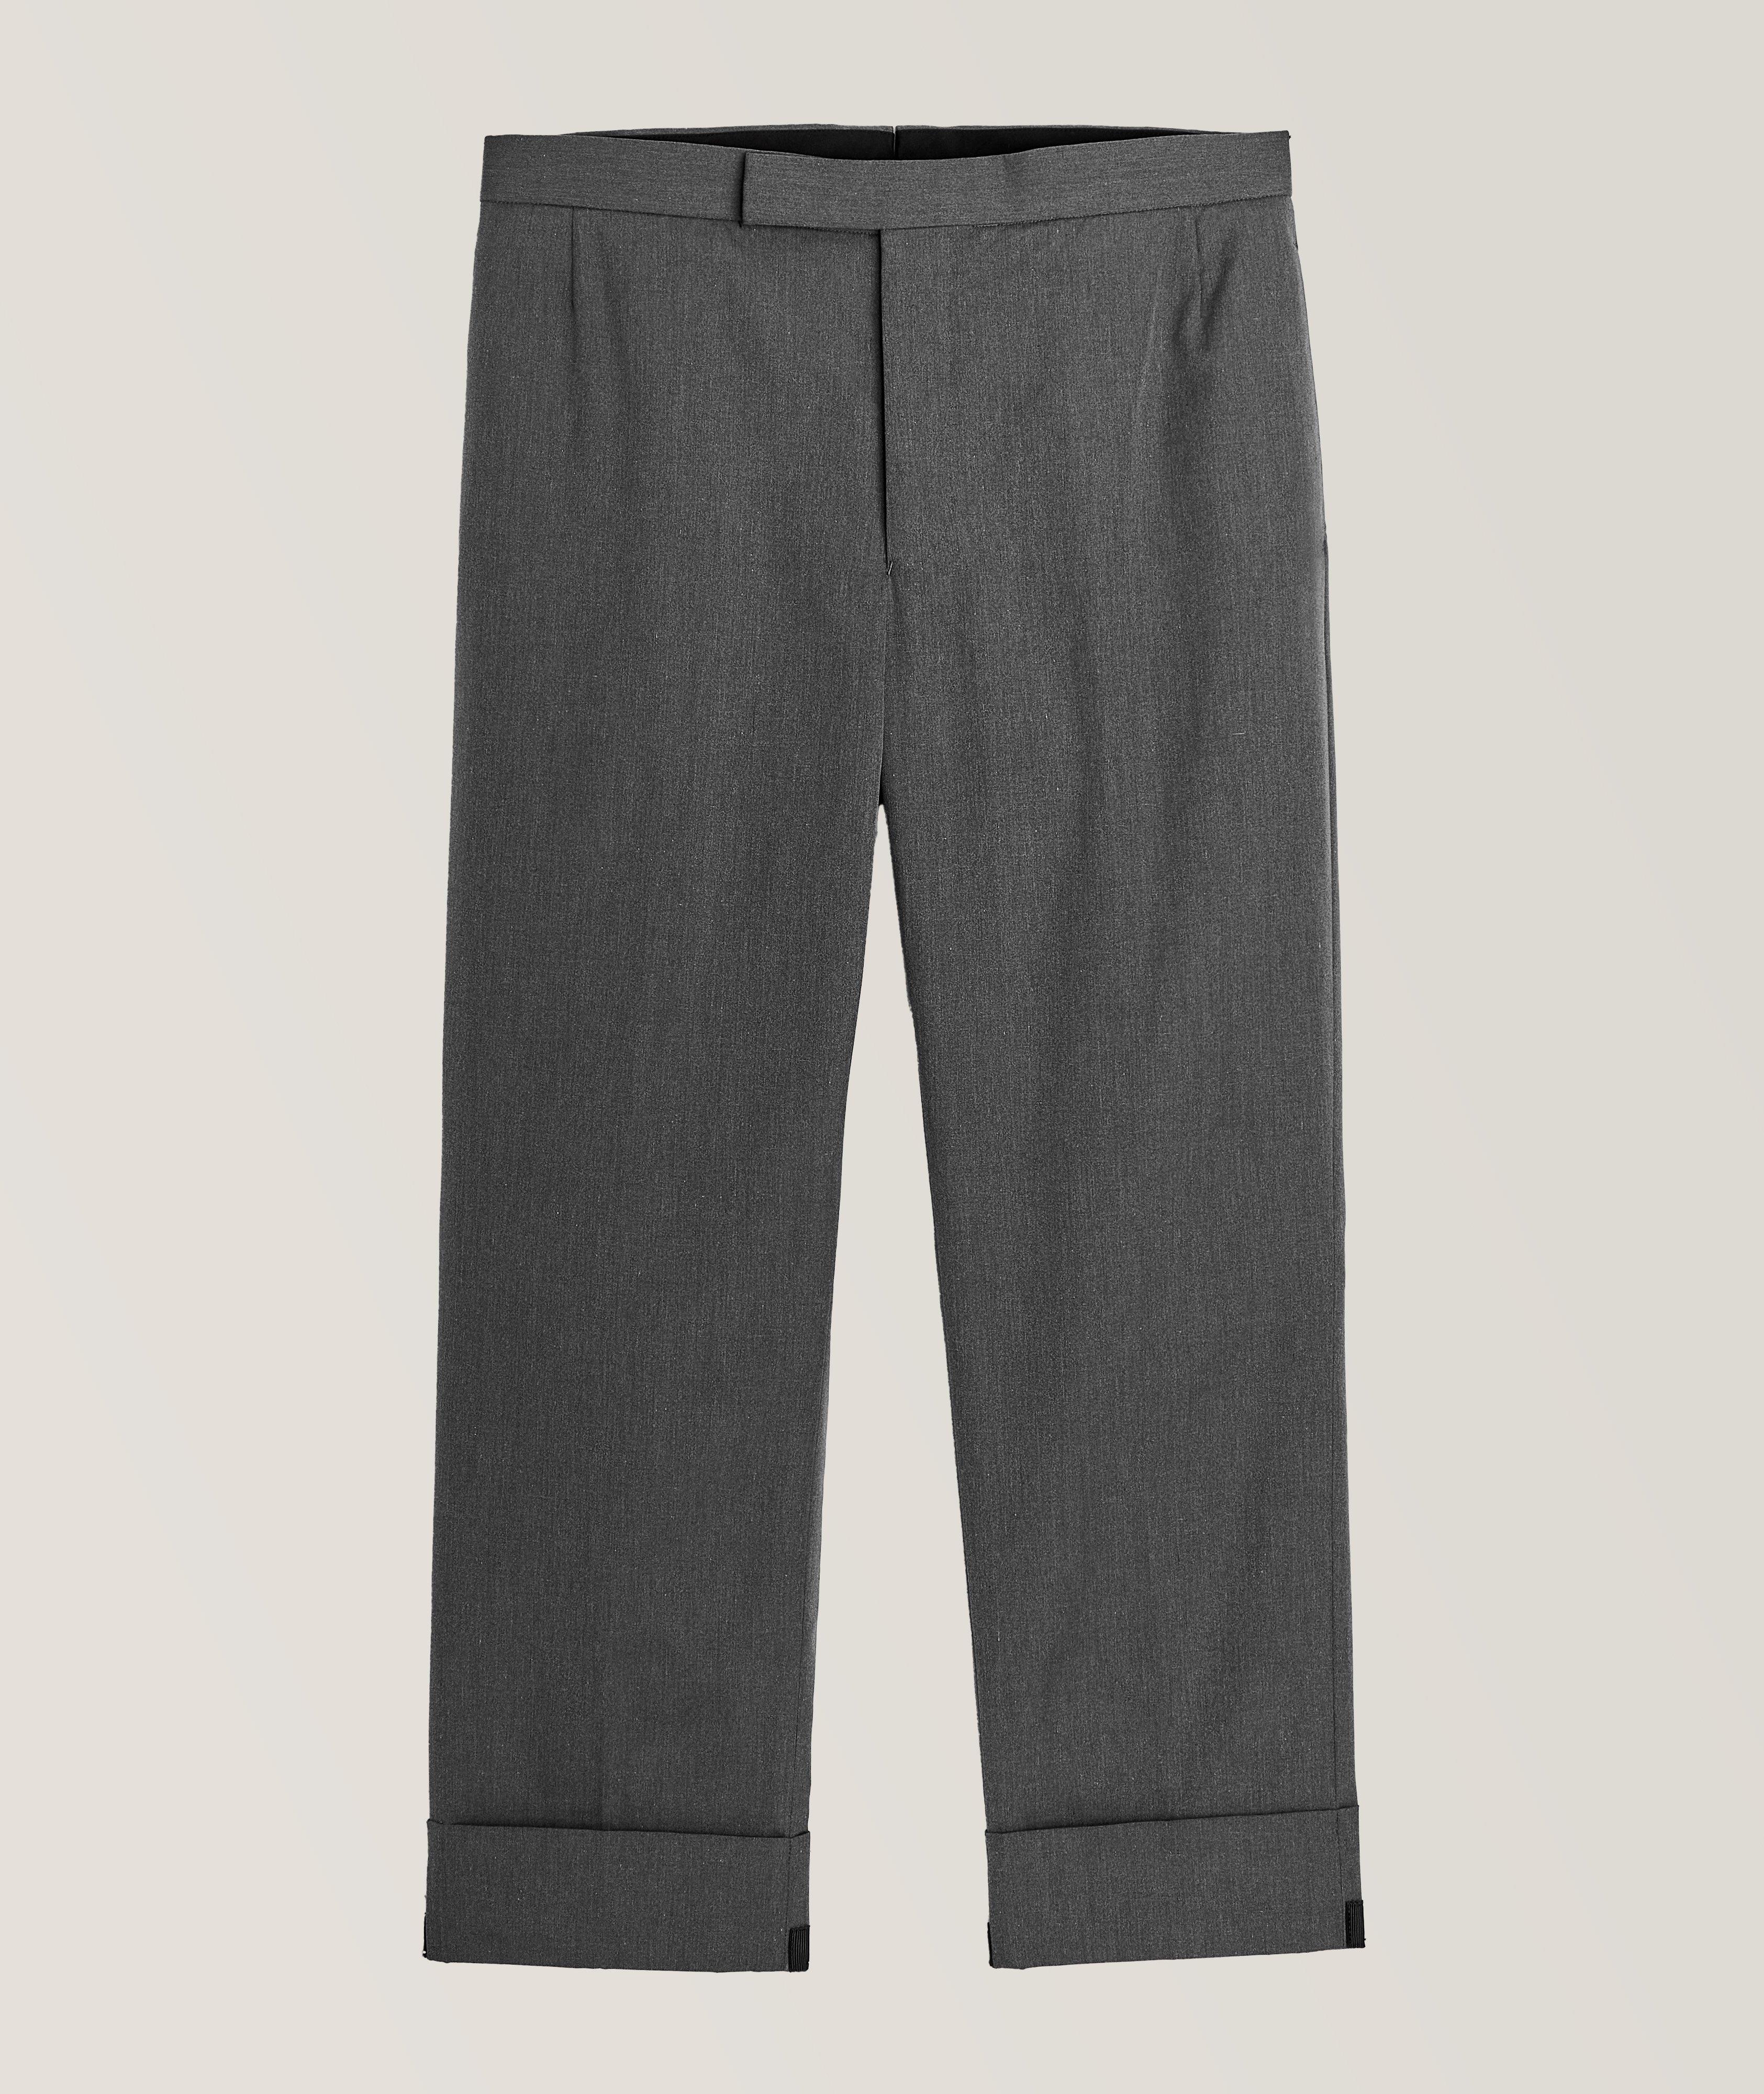 Pantalon en mélange de coton avec courroie arrière ajustable image 0